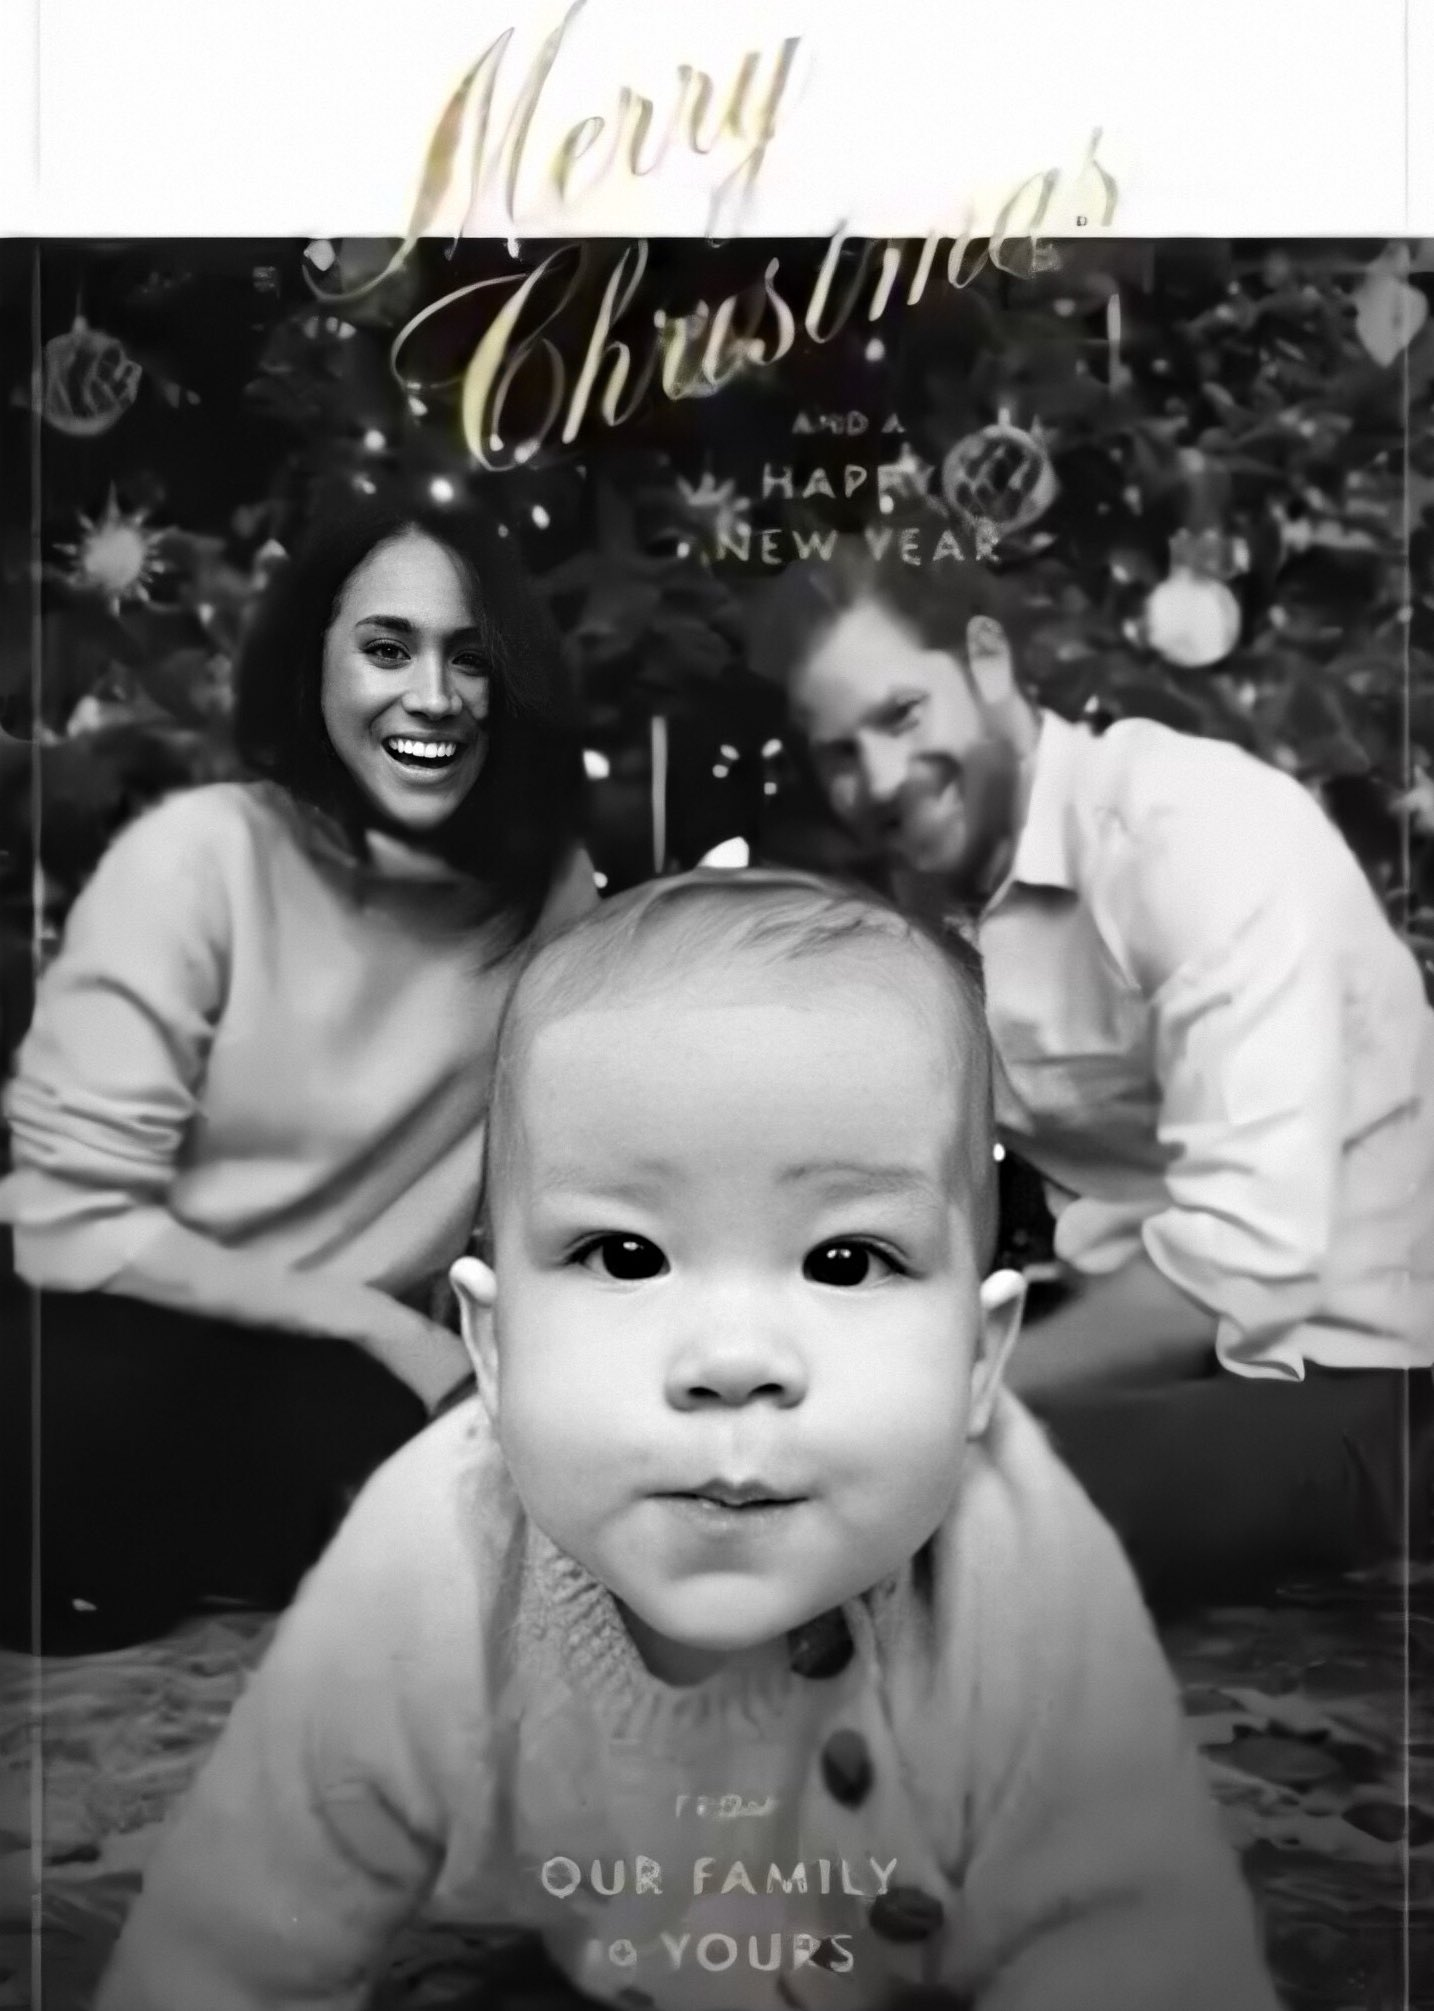 Meghan und Harry wurden von königlichen Fans zu einer Weihnachtskarte befragt, die sie 2019 herausgegeben hatten, auf der Meghans Gesicht im Vergleich zu Harry scharf im Fokus zu stehen scheint